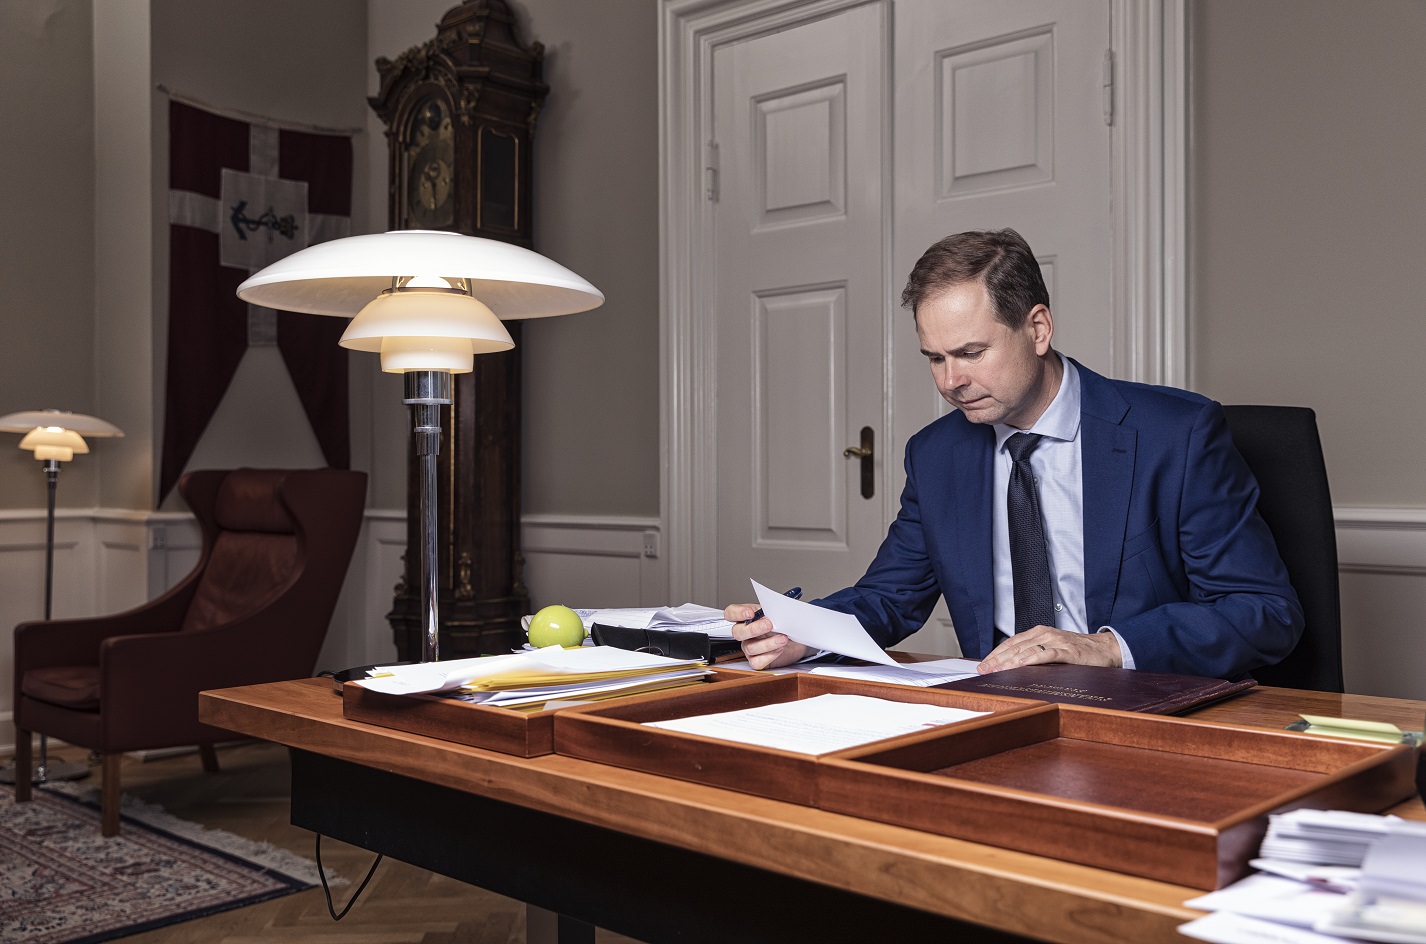 Finansminister Nicolai Wammen sidder ved sit skrivebord og læser et stykke papir